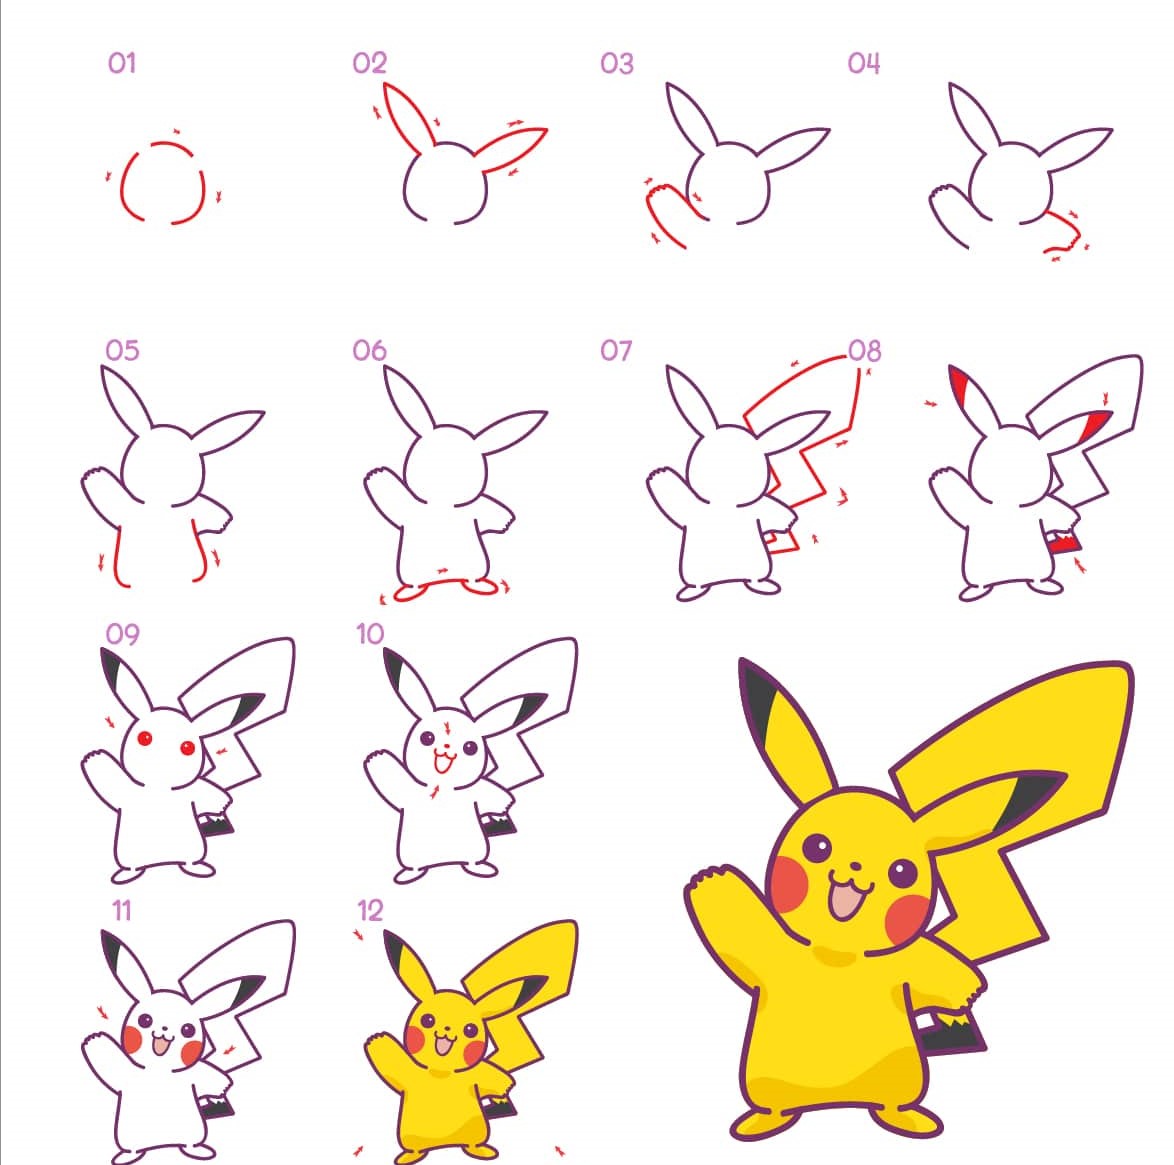 Vẽ Pikachu theo từng bước chắc chắn là điều thú vị và cũng không khó như bạn tưởng. Chỉ cần đi theo hướng dẫn đơn giản, bạn sẽ có được một bức vẽ Pikachu hoàn hảo với chính đôi tay của mình. Hãy xem hình vẽ này để bắt đầu hành trình sáng tạo của bạn.